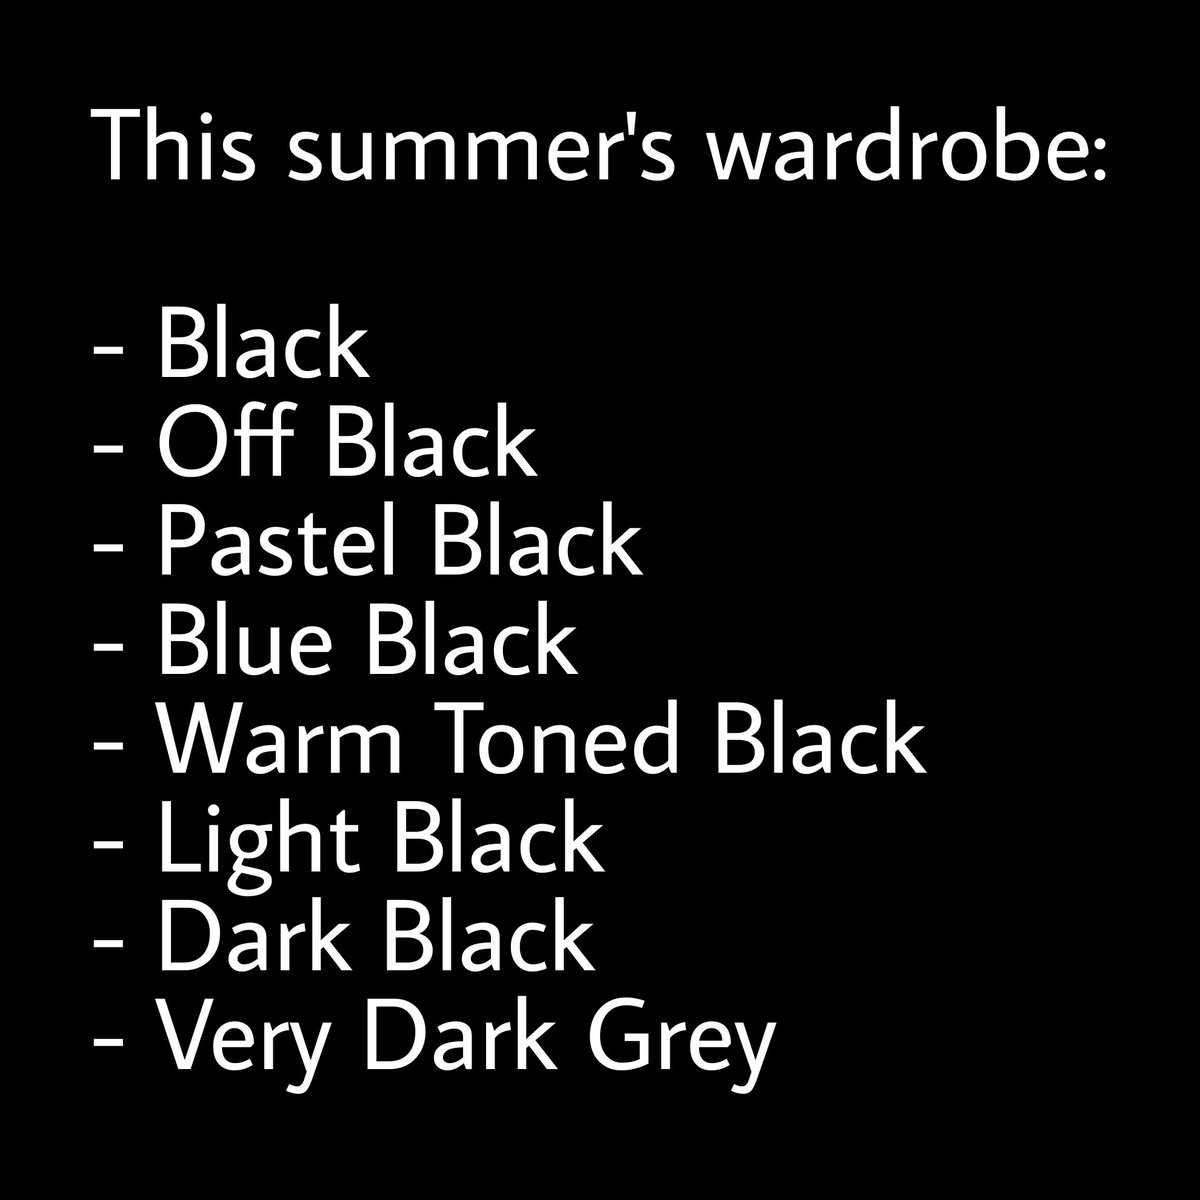 This summer's wardrobe
#goth #gothic #gothclothing